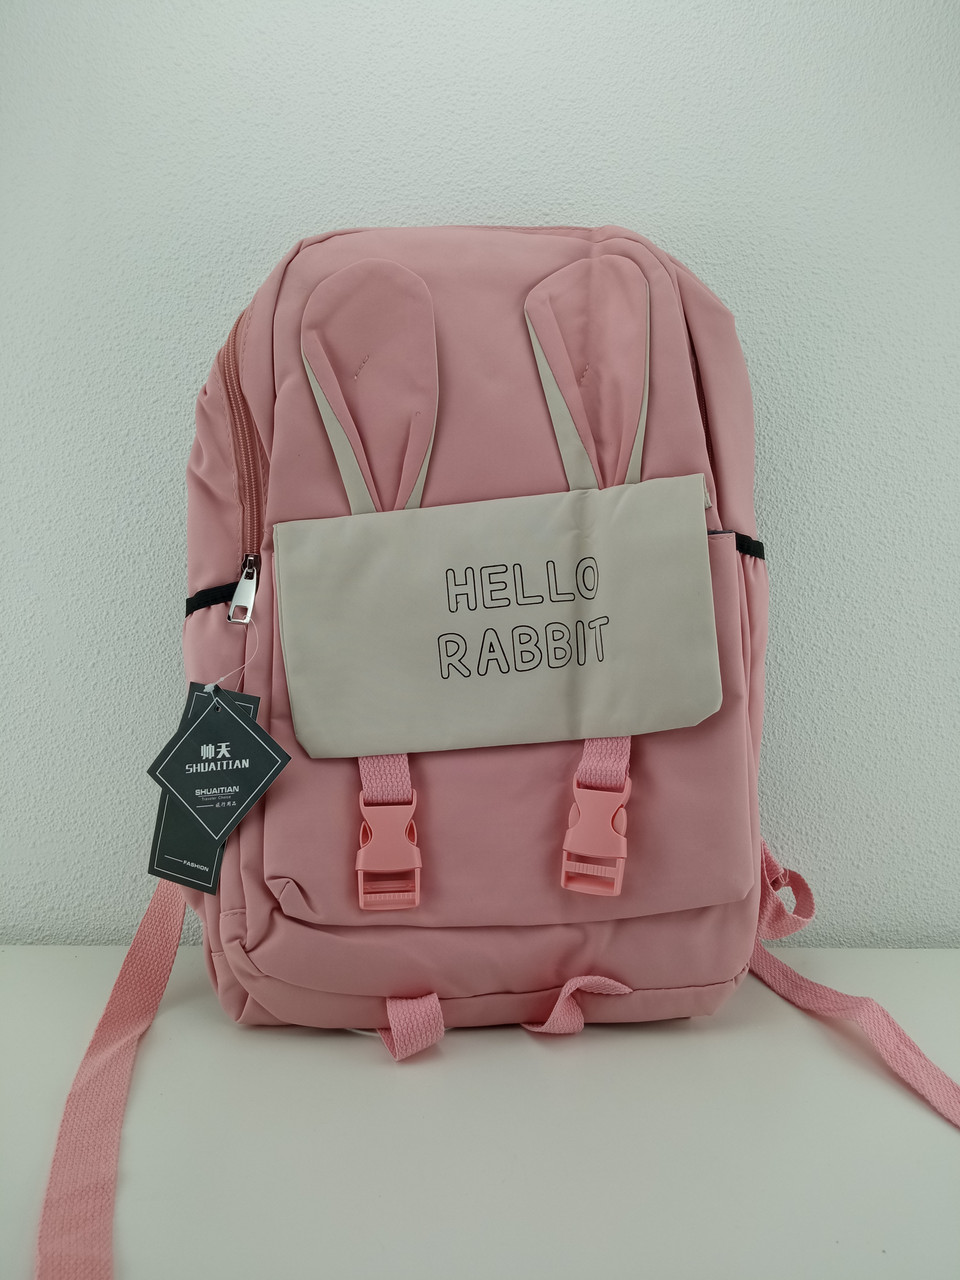 Рюкзак Hello Rabbit розовый 40 х 30 см, фото 1